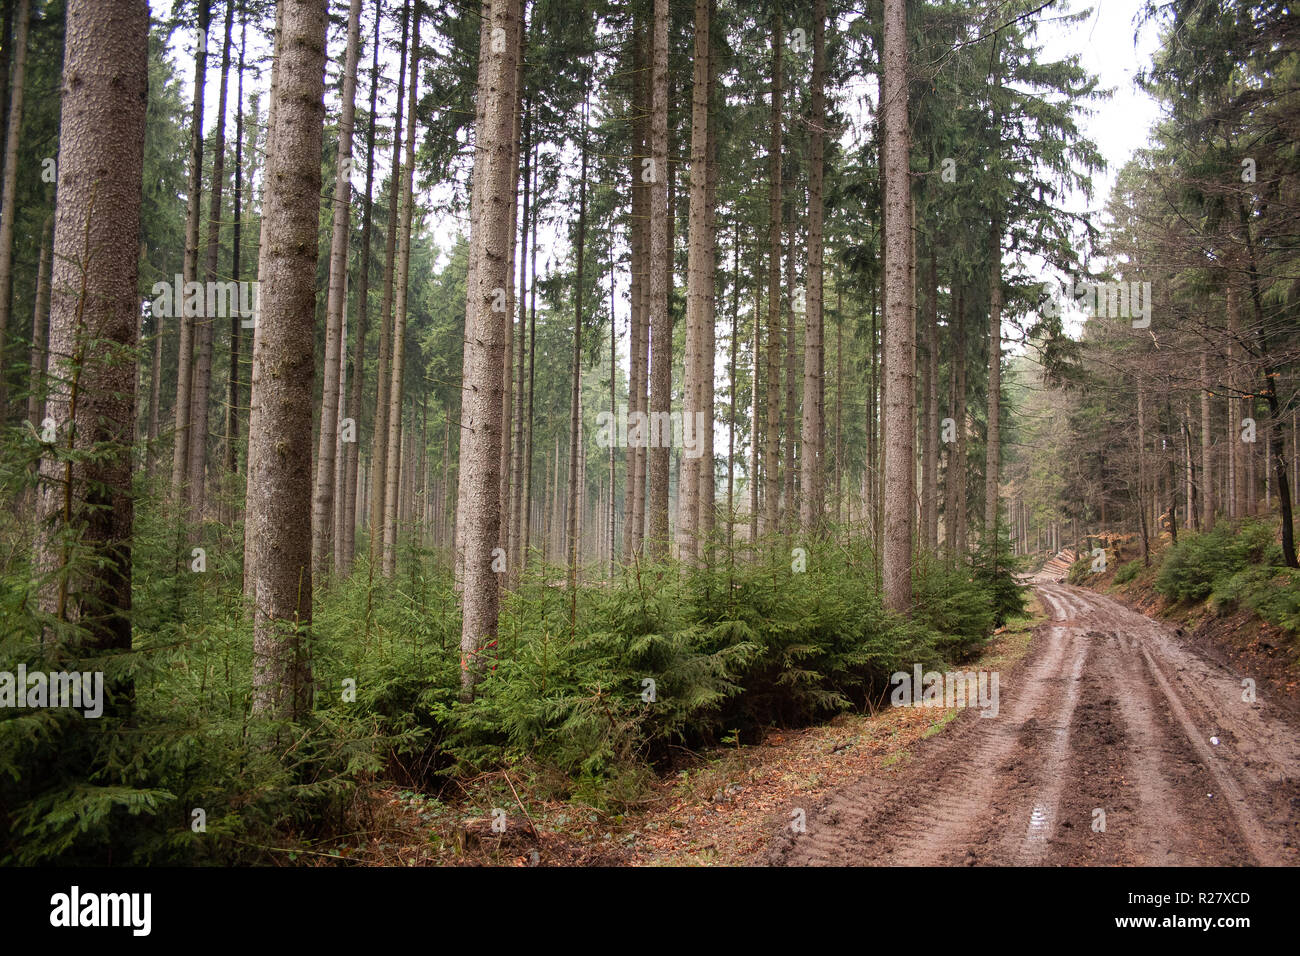 Ein Fichtenwald im Erzgebirge, ganz in der Nähe von Thalheim. Das Bild wurde an einem regnerischen Tag aufgenommen. Stock Photo